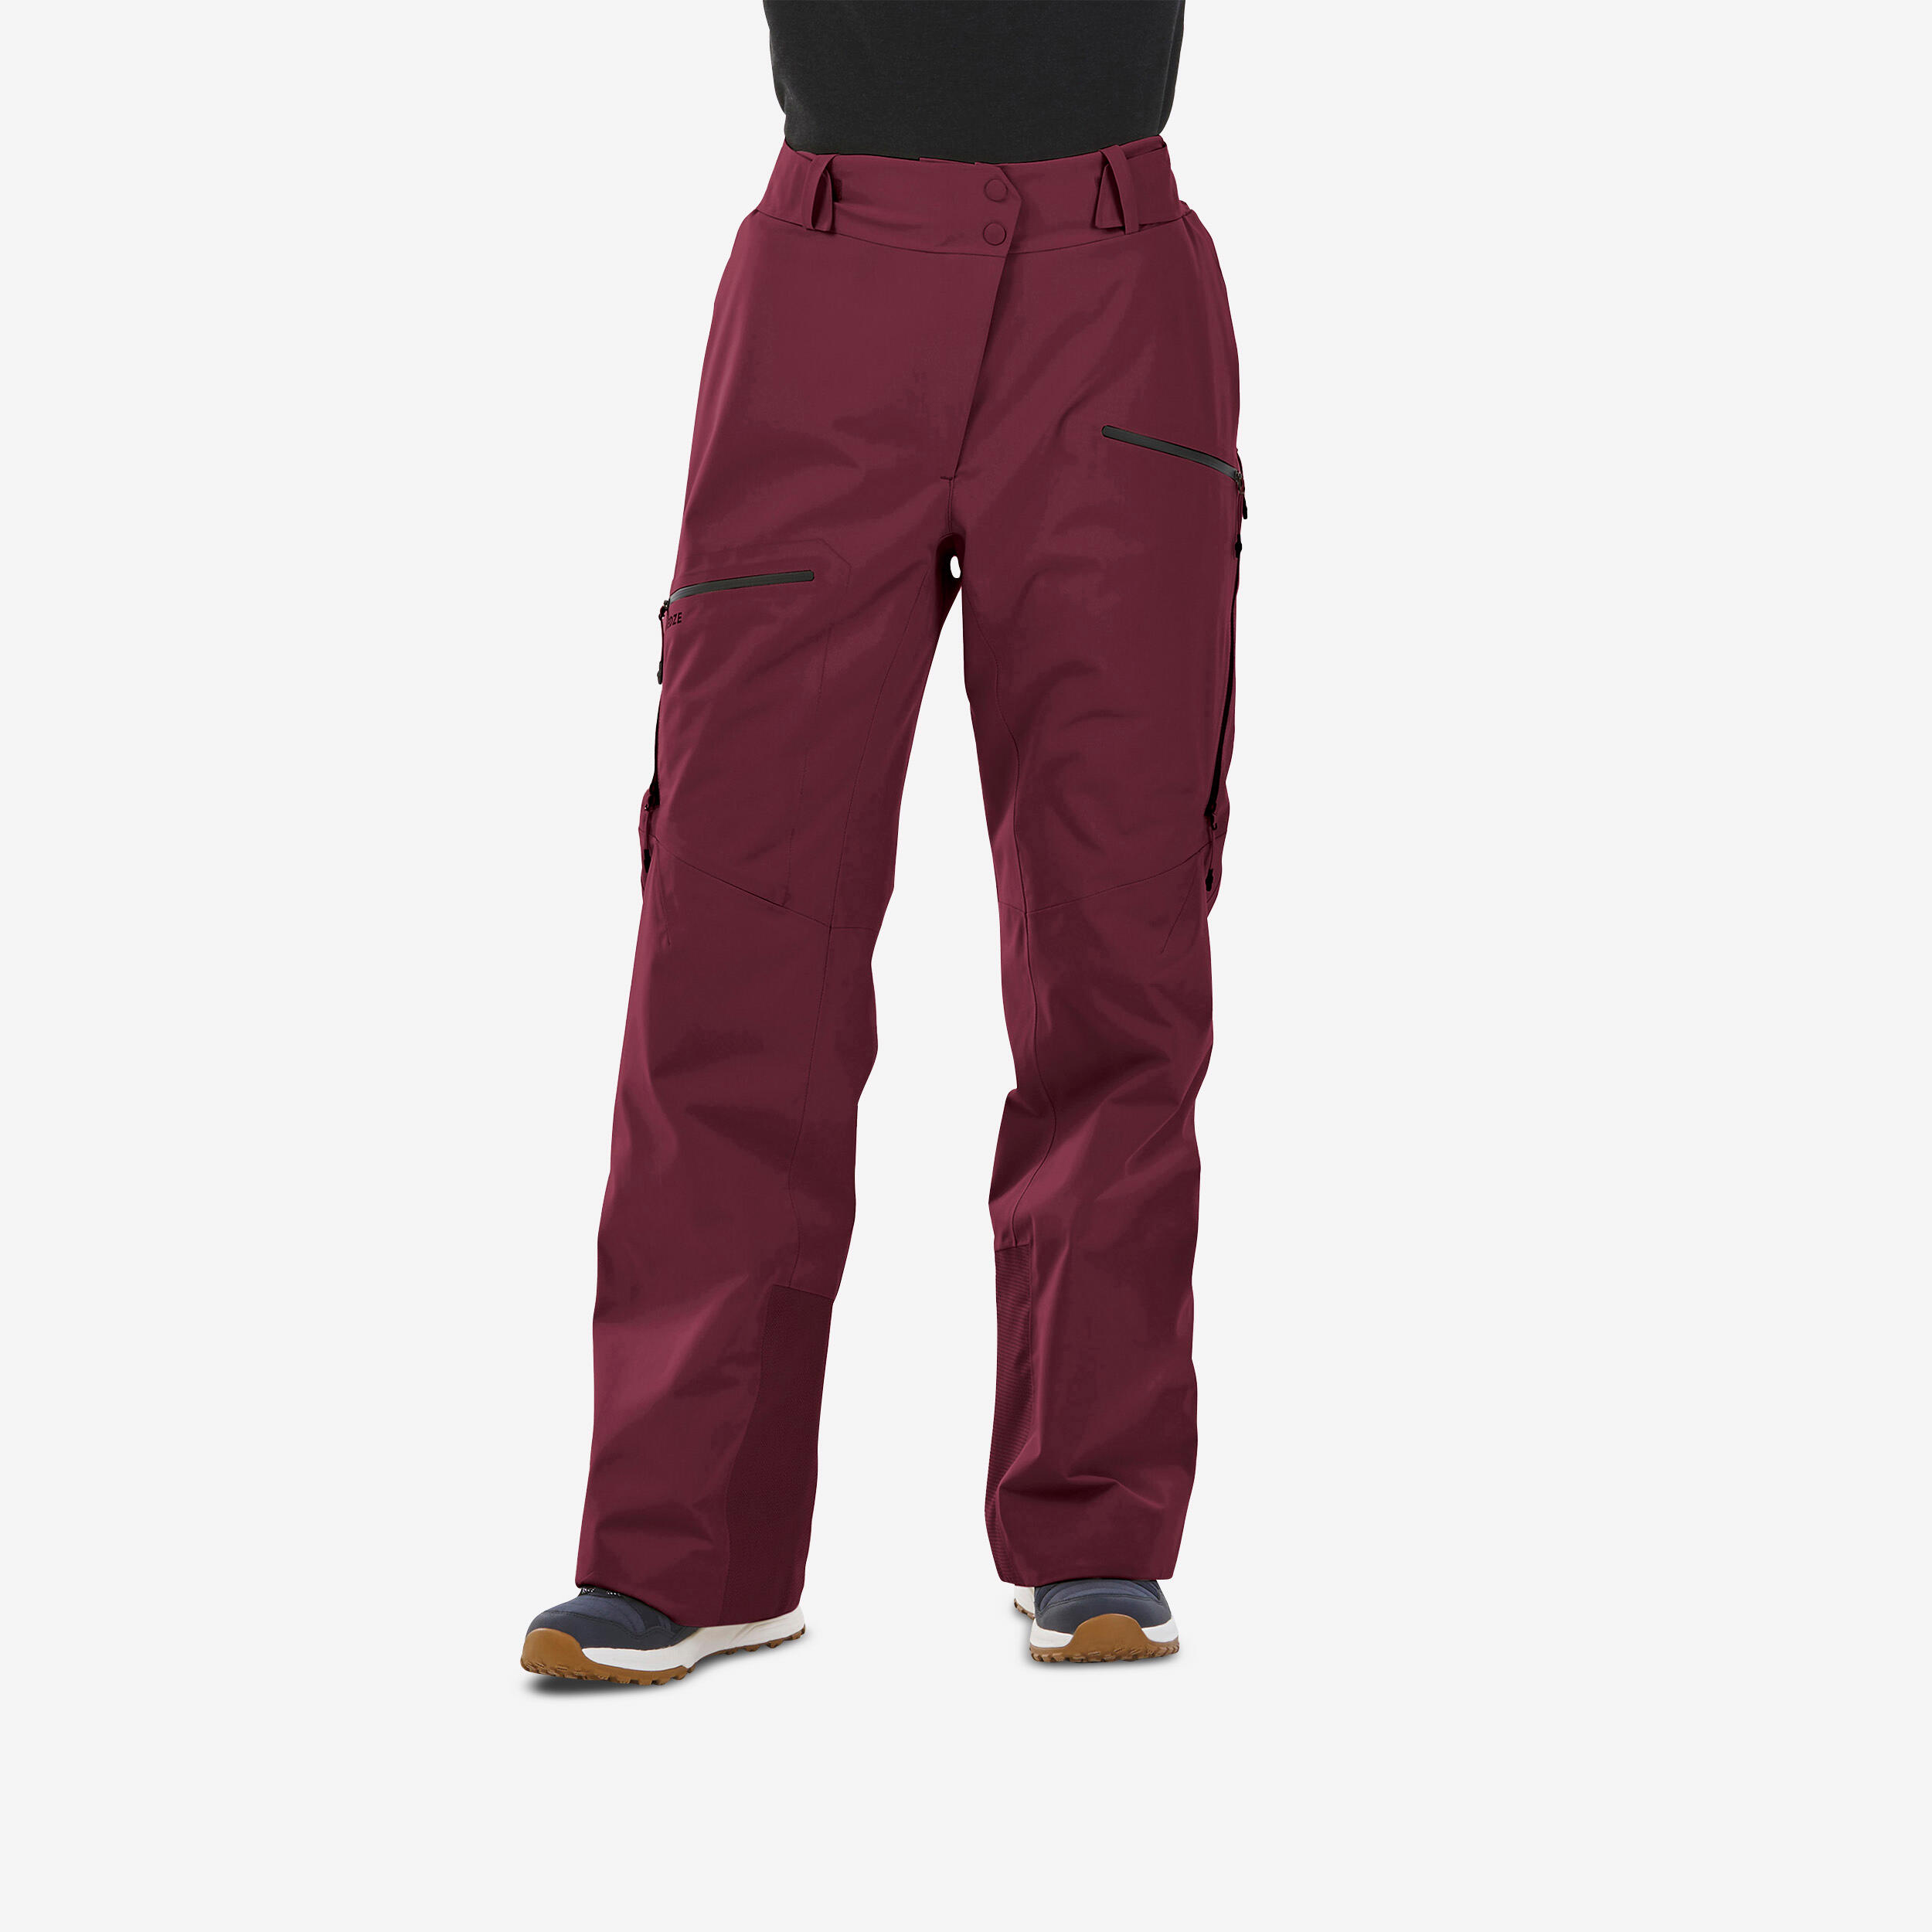 Women's ski trousers - FR100 - Burgundy 1/9